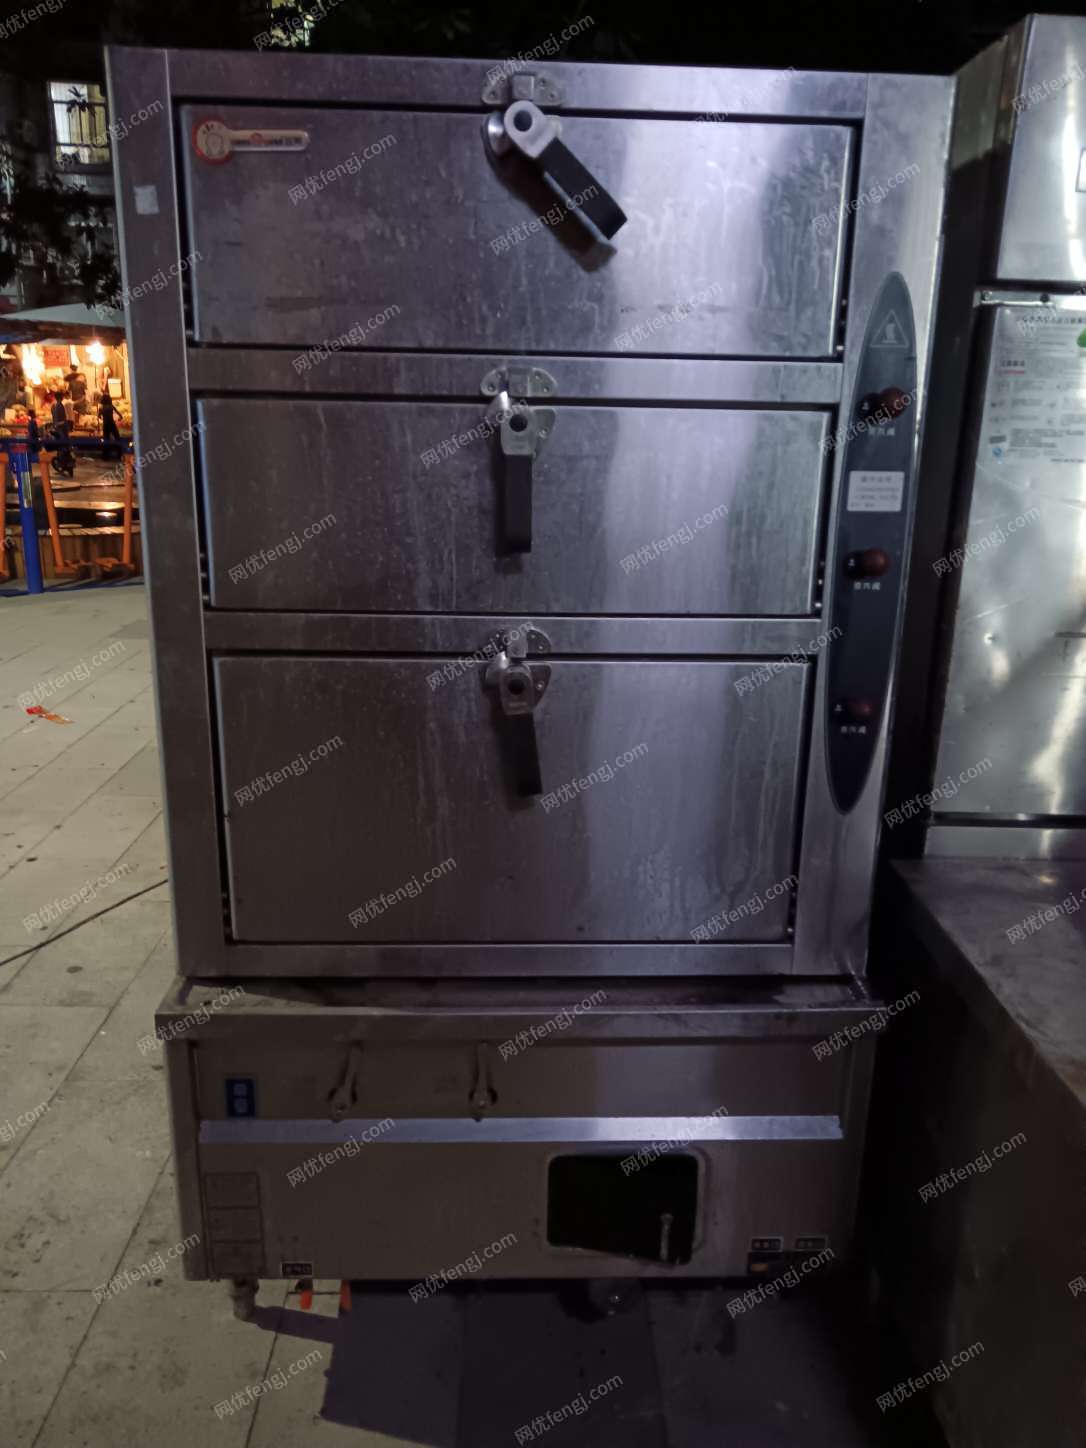 因门面拆迁，处理厨房电器， 蒸烤箱一个（三层 长1米，高1.8米，宽1米）， 四开门冰柜两个（长1.2米，高1.9米，宽0.7米， 两开门冰柜一个（长1.5米，高0.8米，宽0.8米）， 中间台柜两边